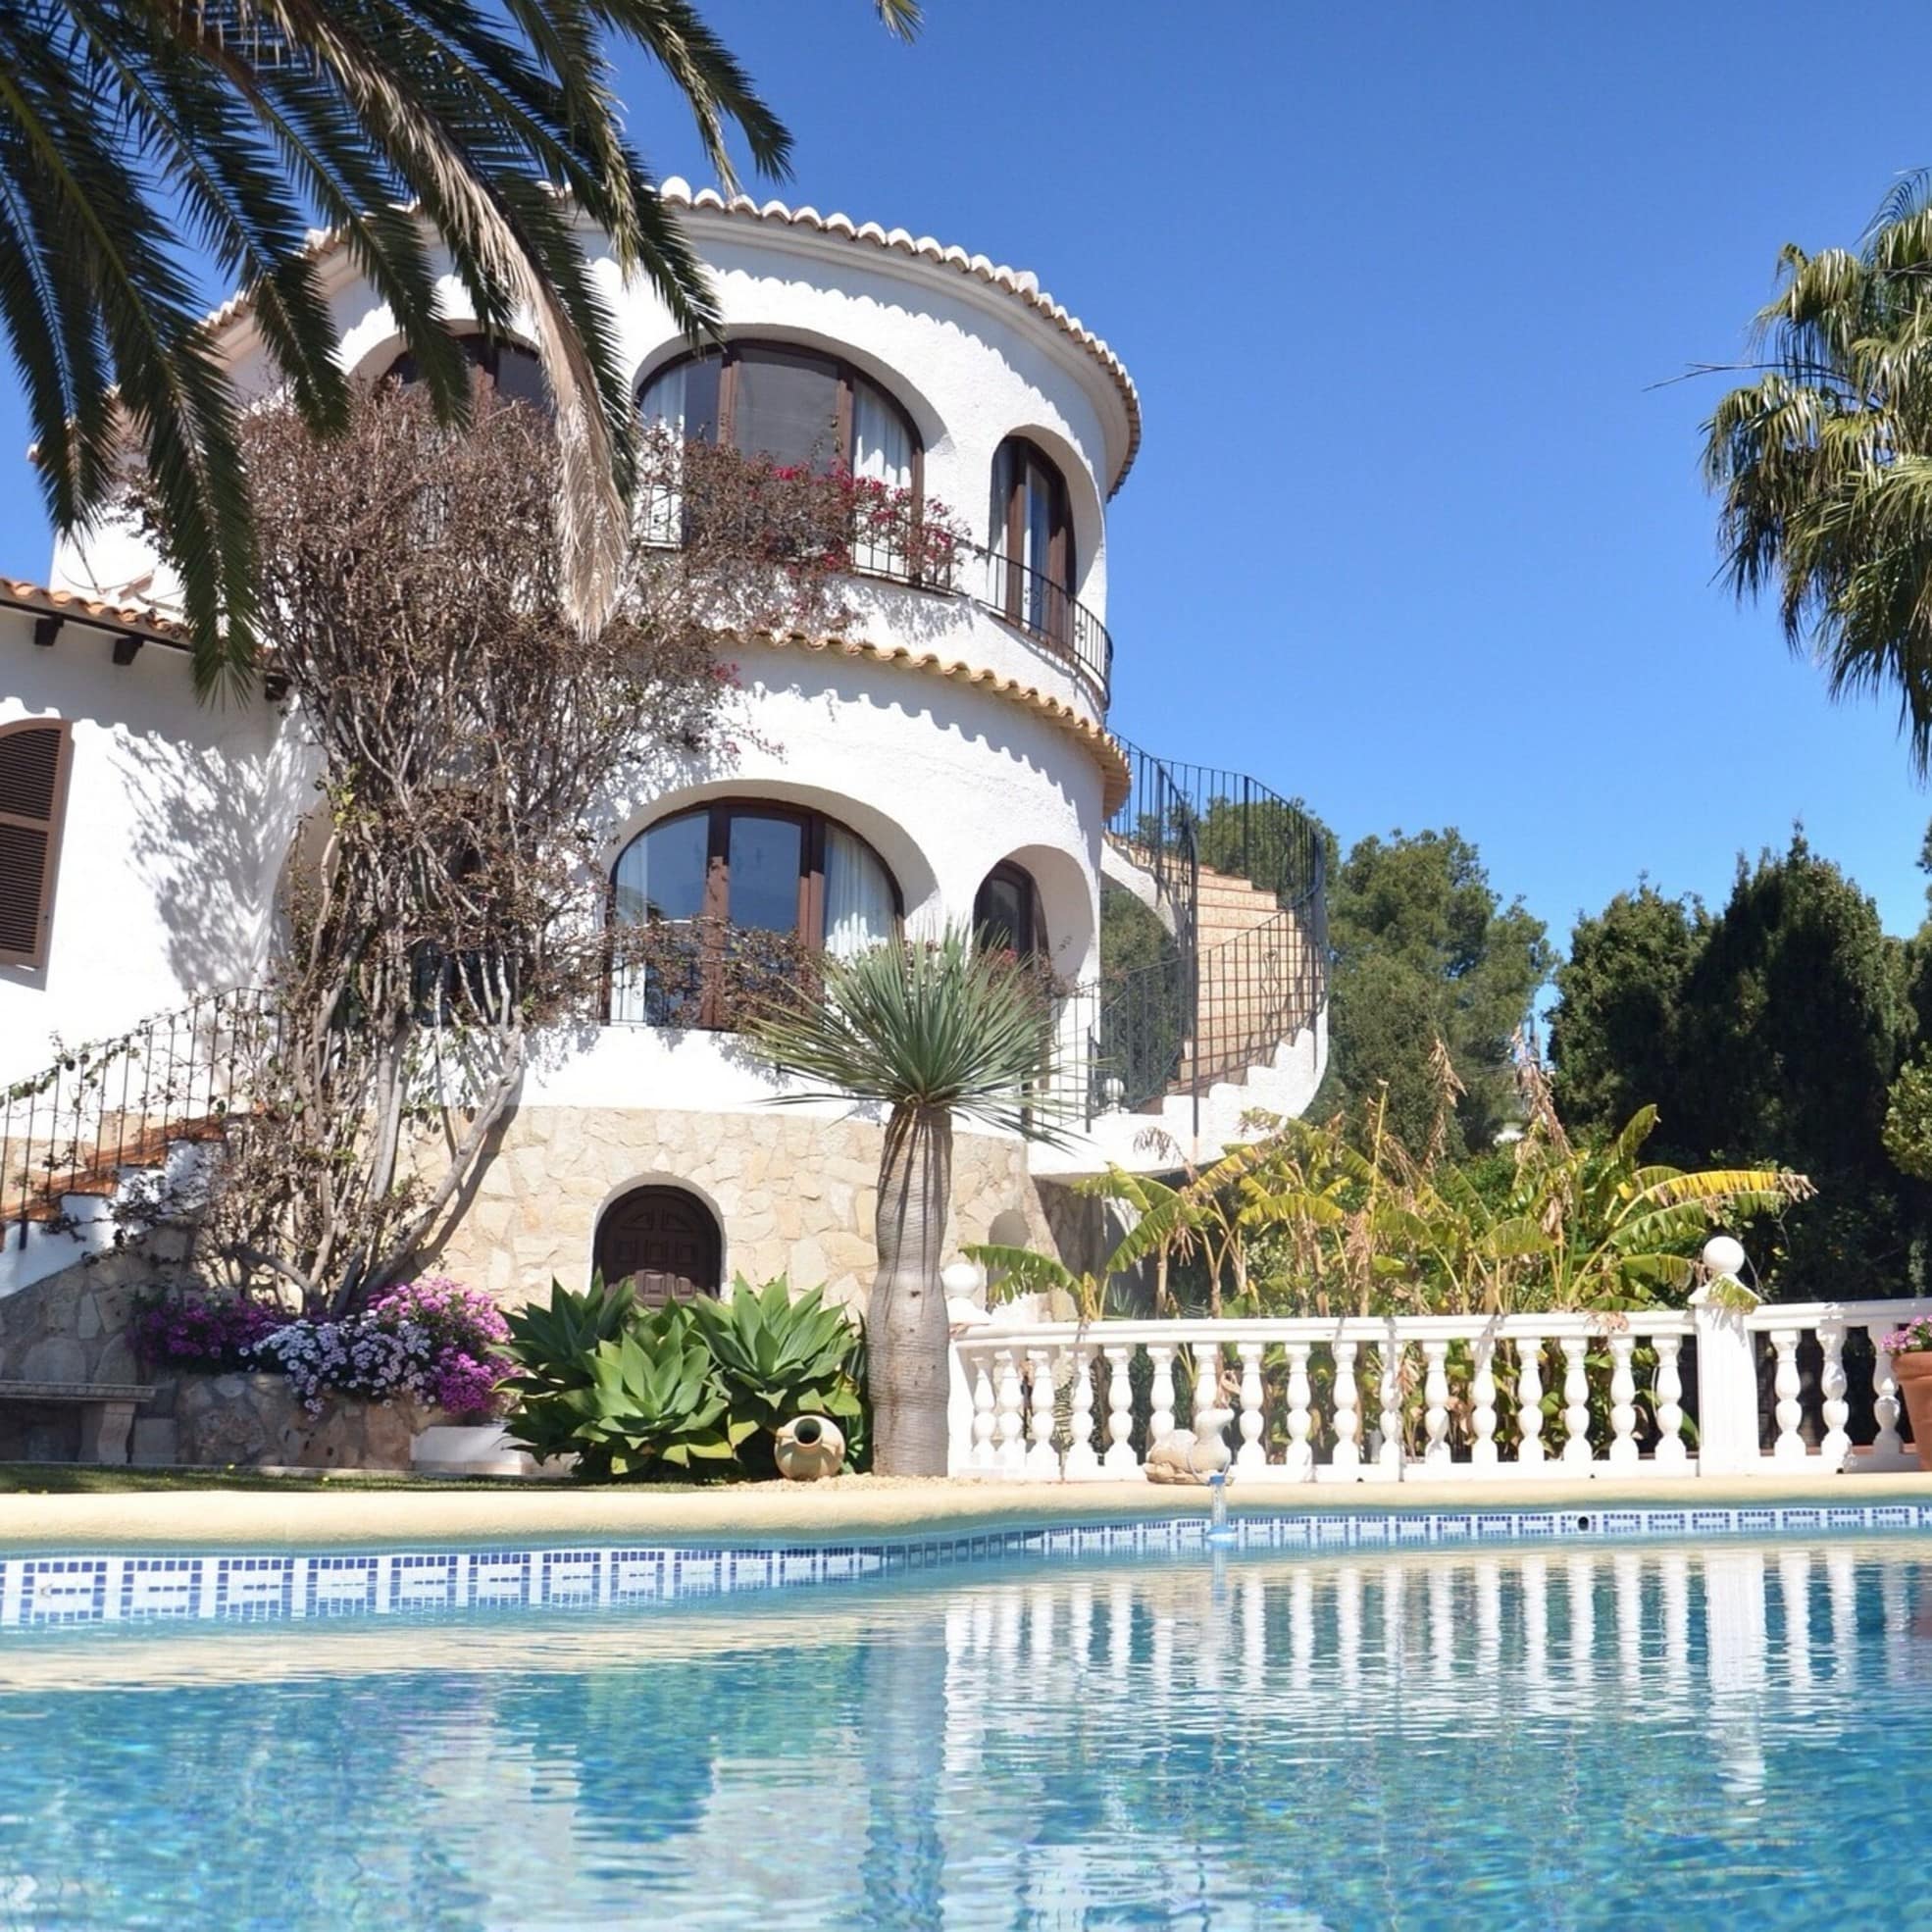 Villa mit Treppe zum Pool und Bäumen im Hintergrund